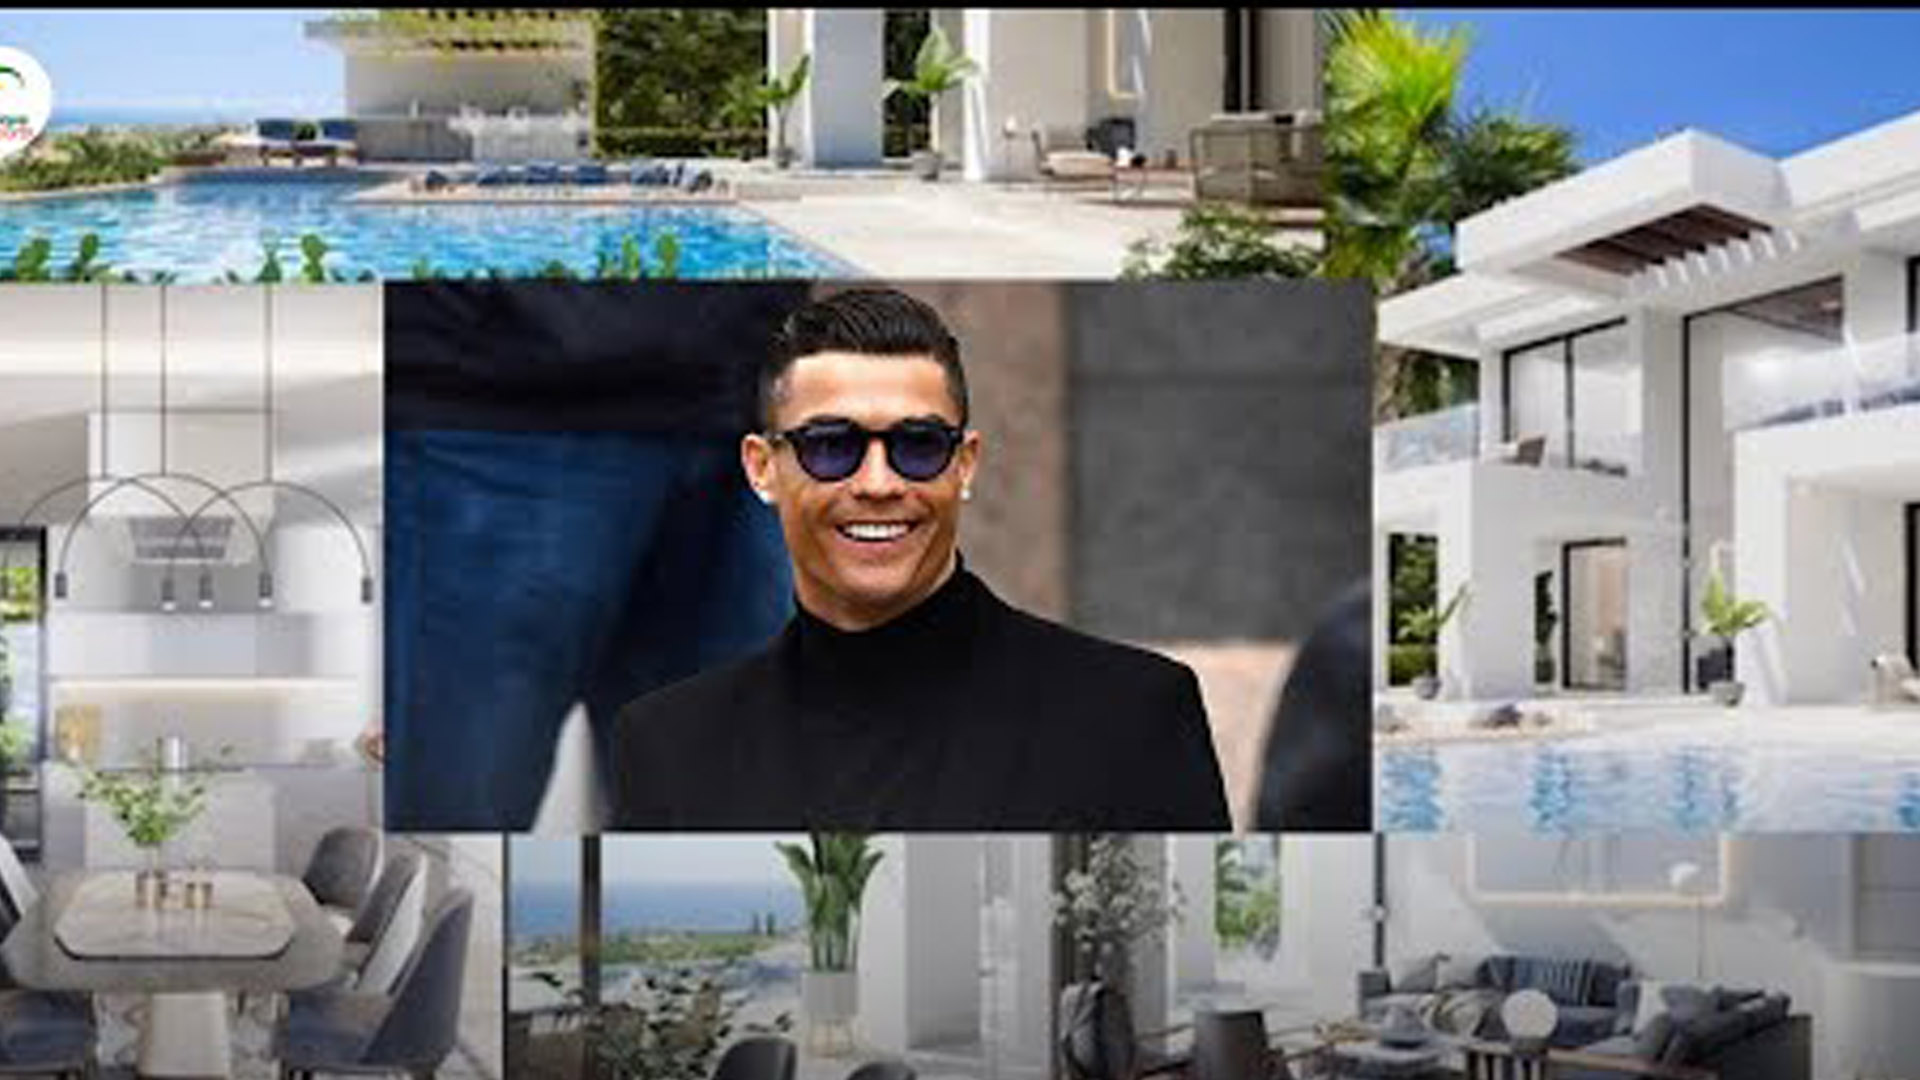 Les images de la maison de Cristiano Ronaldo, la plus chère jamais vendue au Portugal